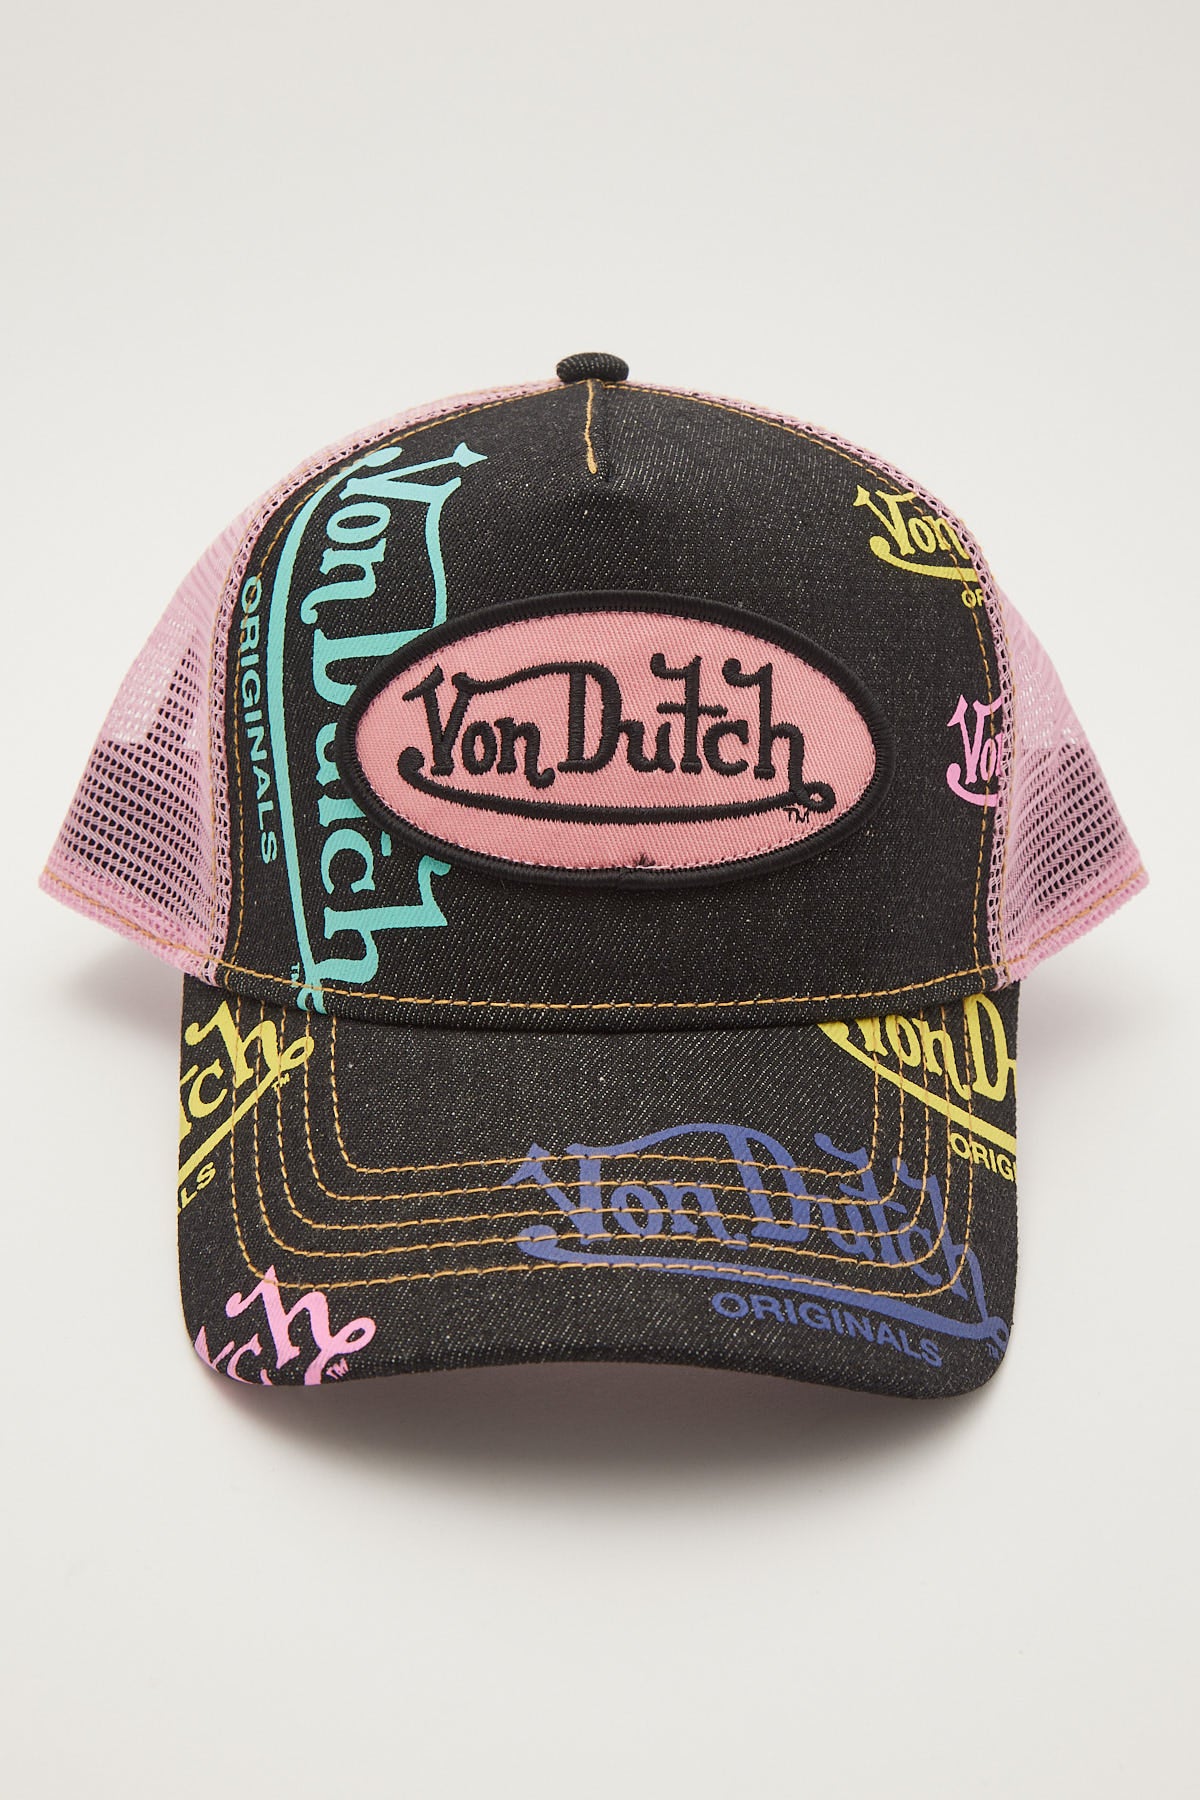 Von Dutch Dark Blue Denim Pink Trucker Hat Dark Blue Denim/Pink